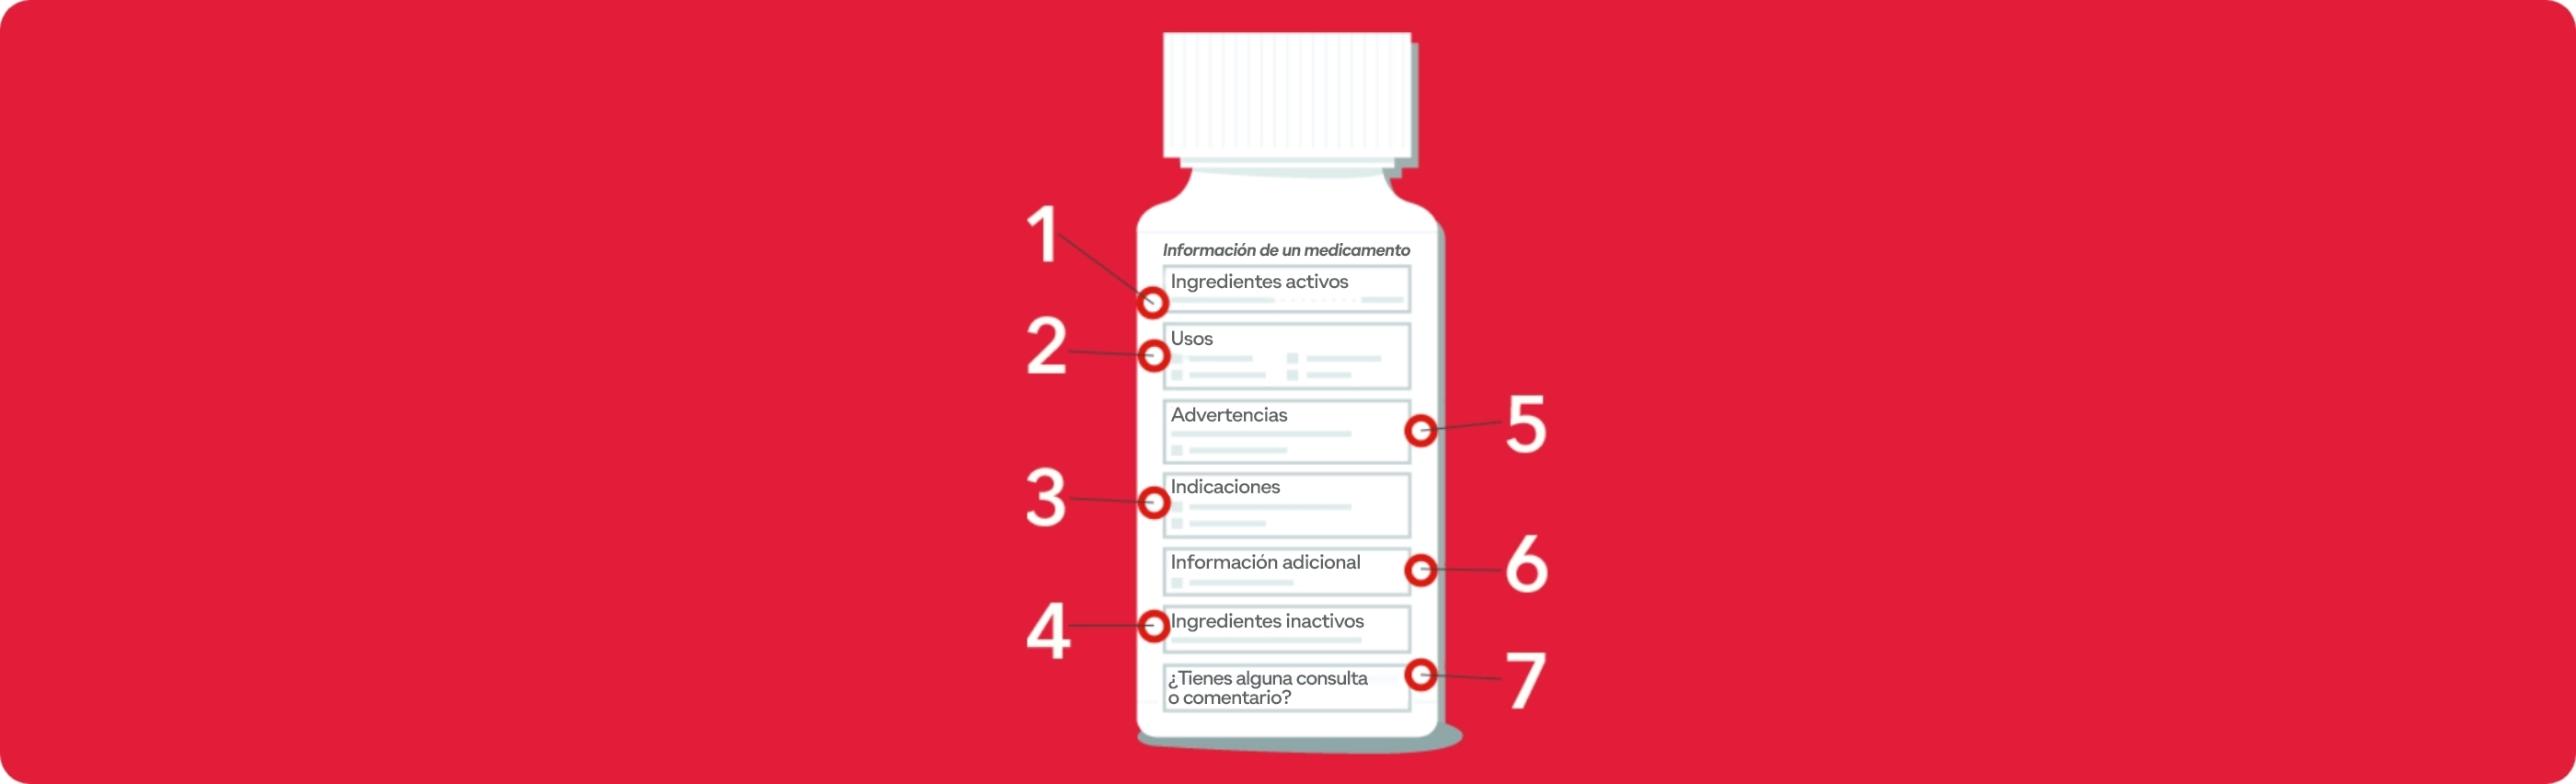 7 artículos que debes mirar cuando lees una etiqueta de medicamento